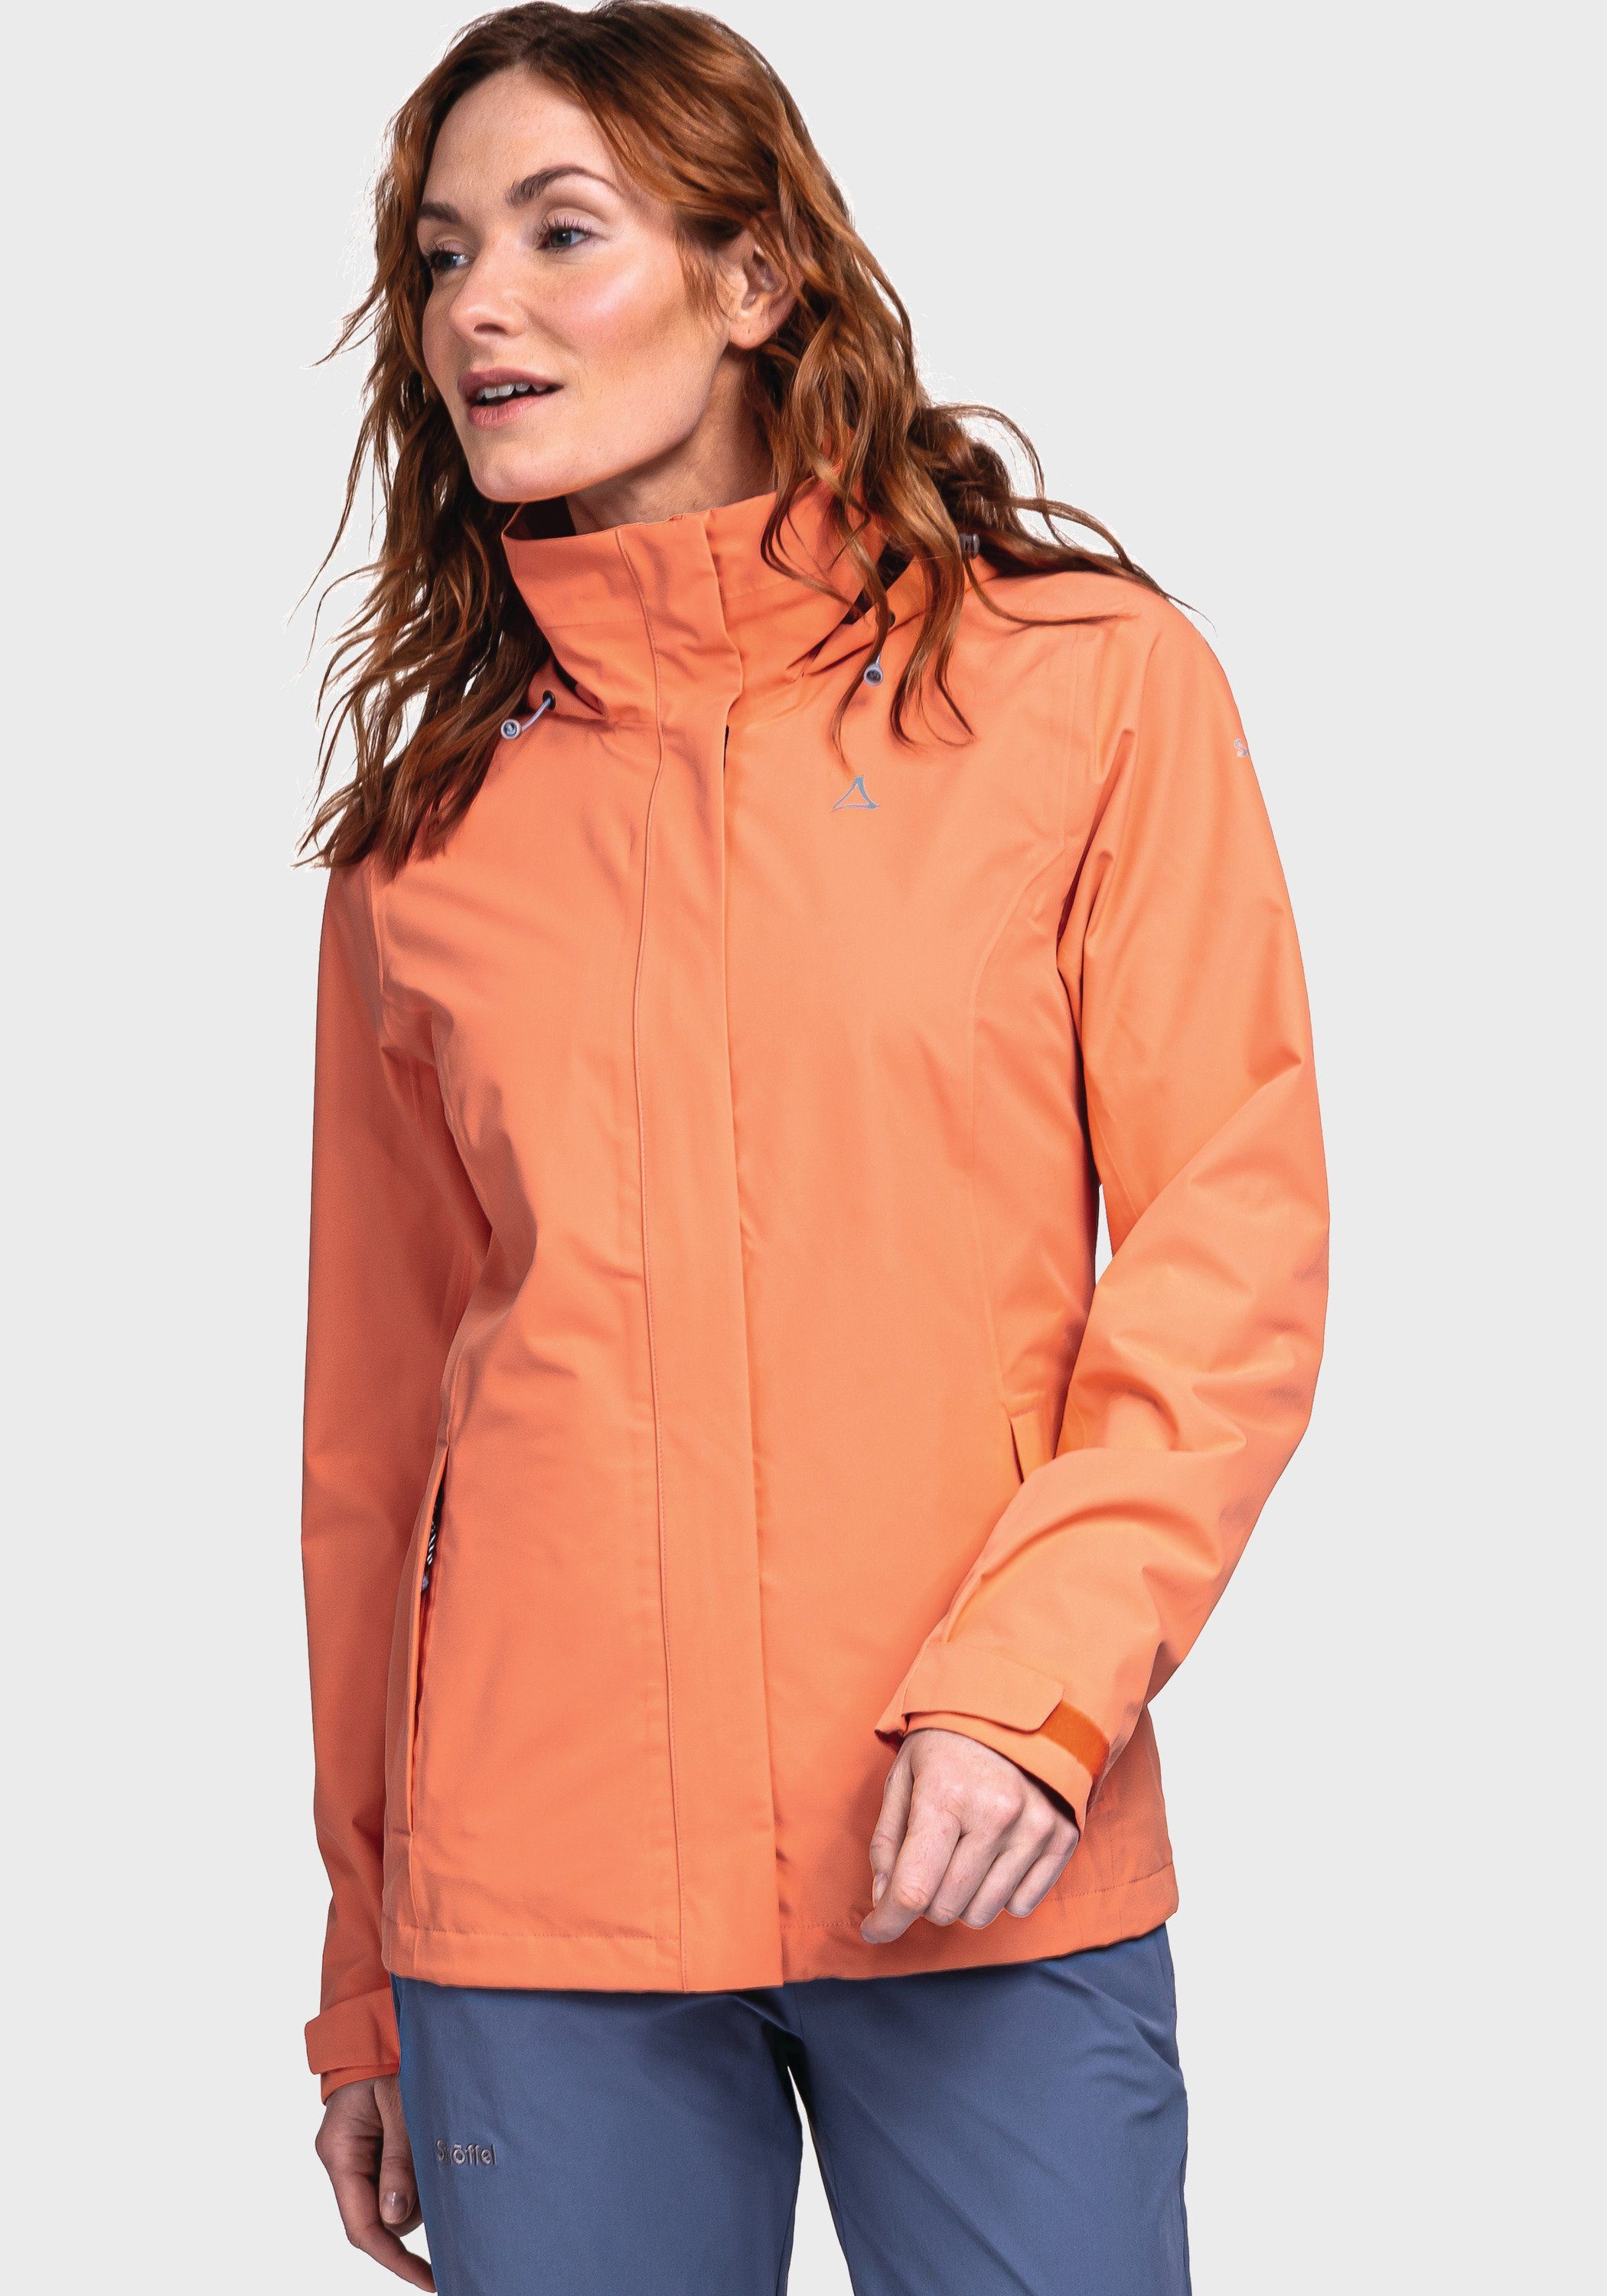 Gmund Schöffel orange Outdoorjacke Jacket L